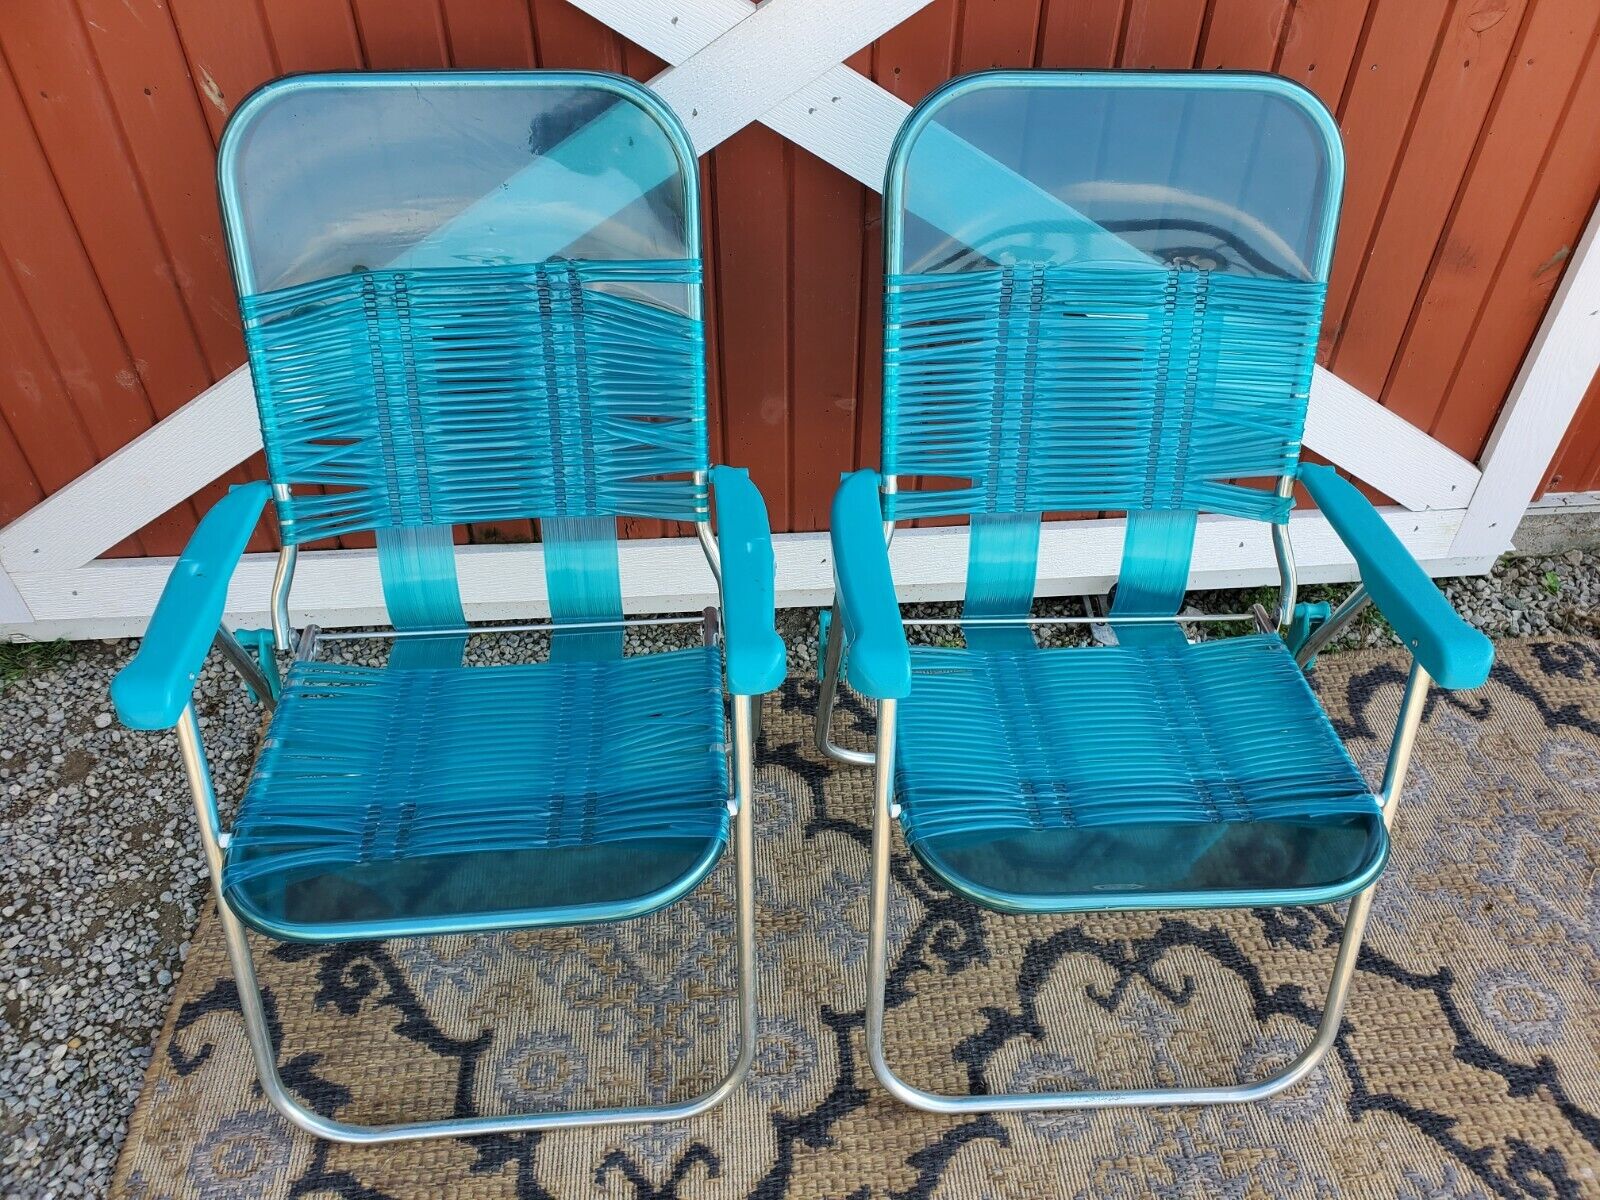 Vintage Folding Lawn Chairs Beach Deck Pool Vinyl Tubing Plastic Light Blue Lot Hoge beoordeling voor verzending van bestelling